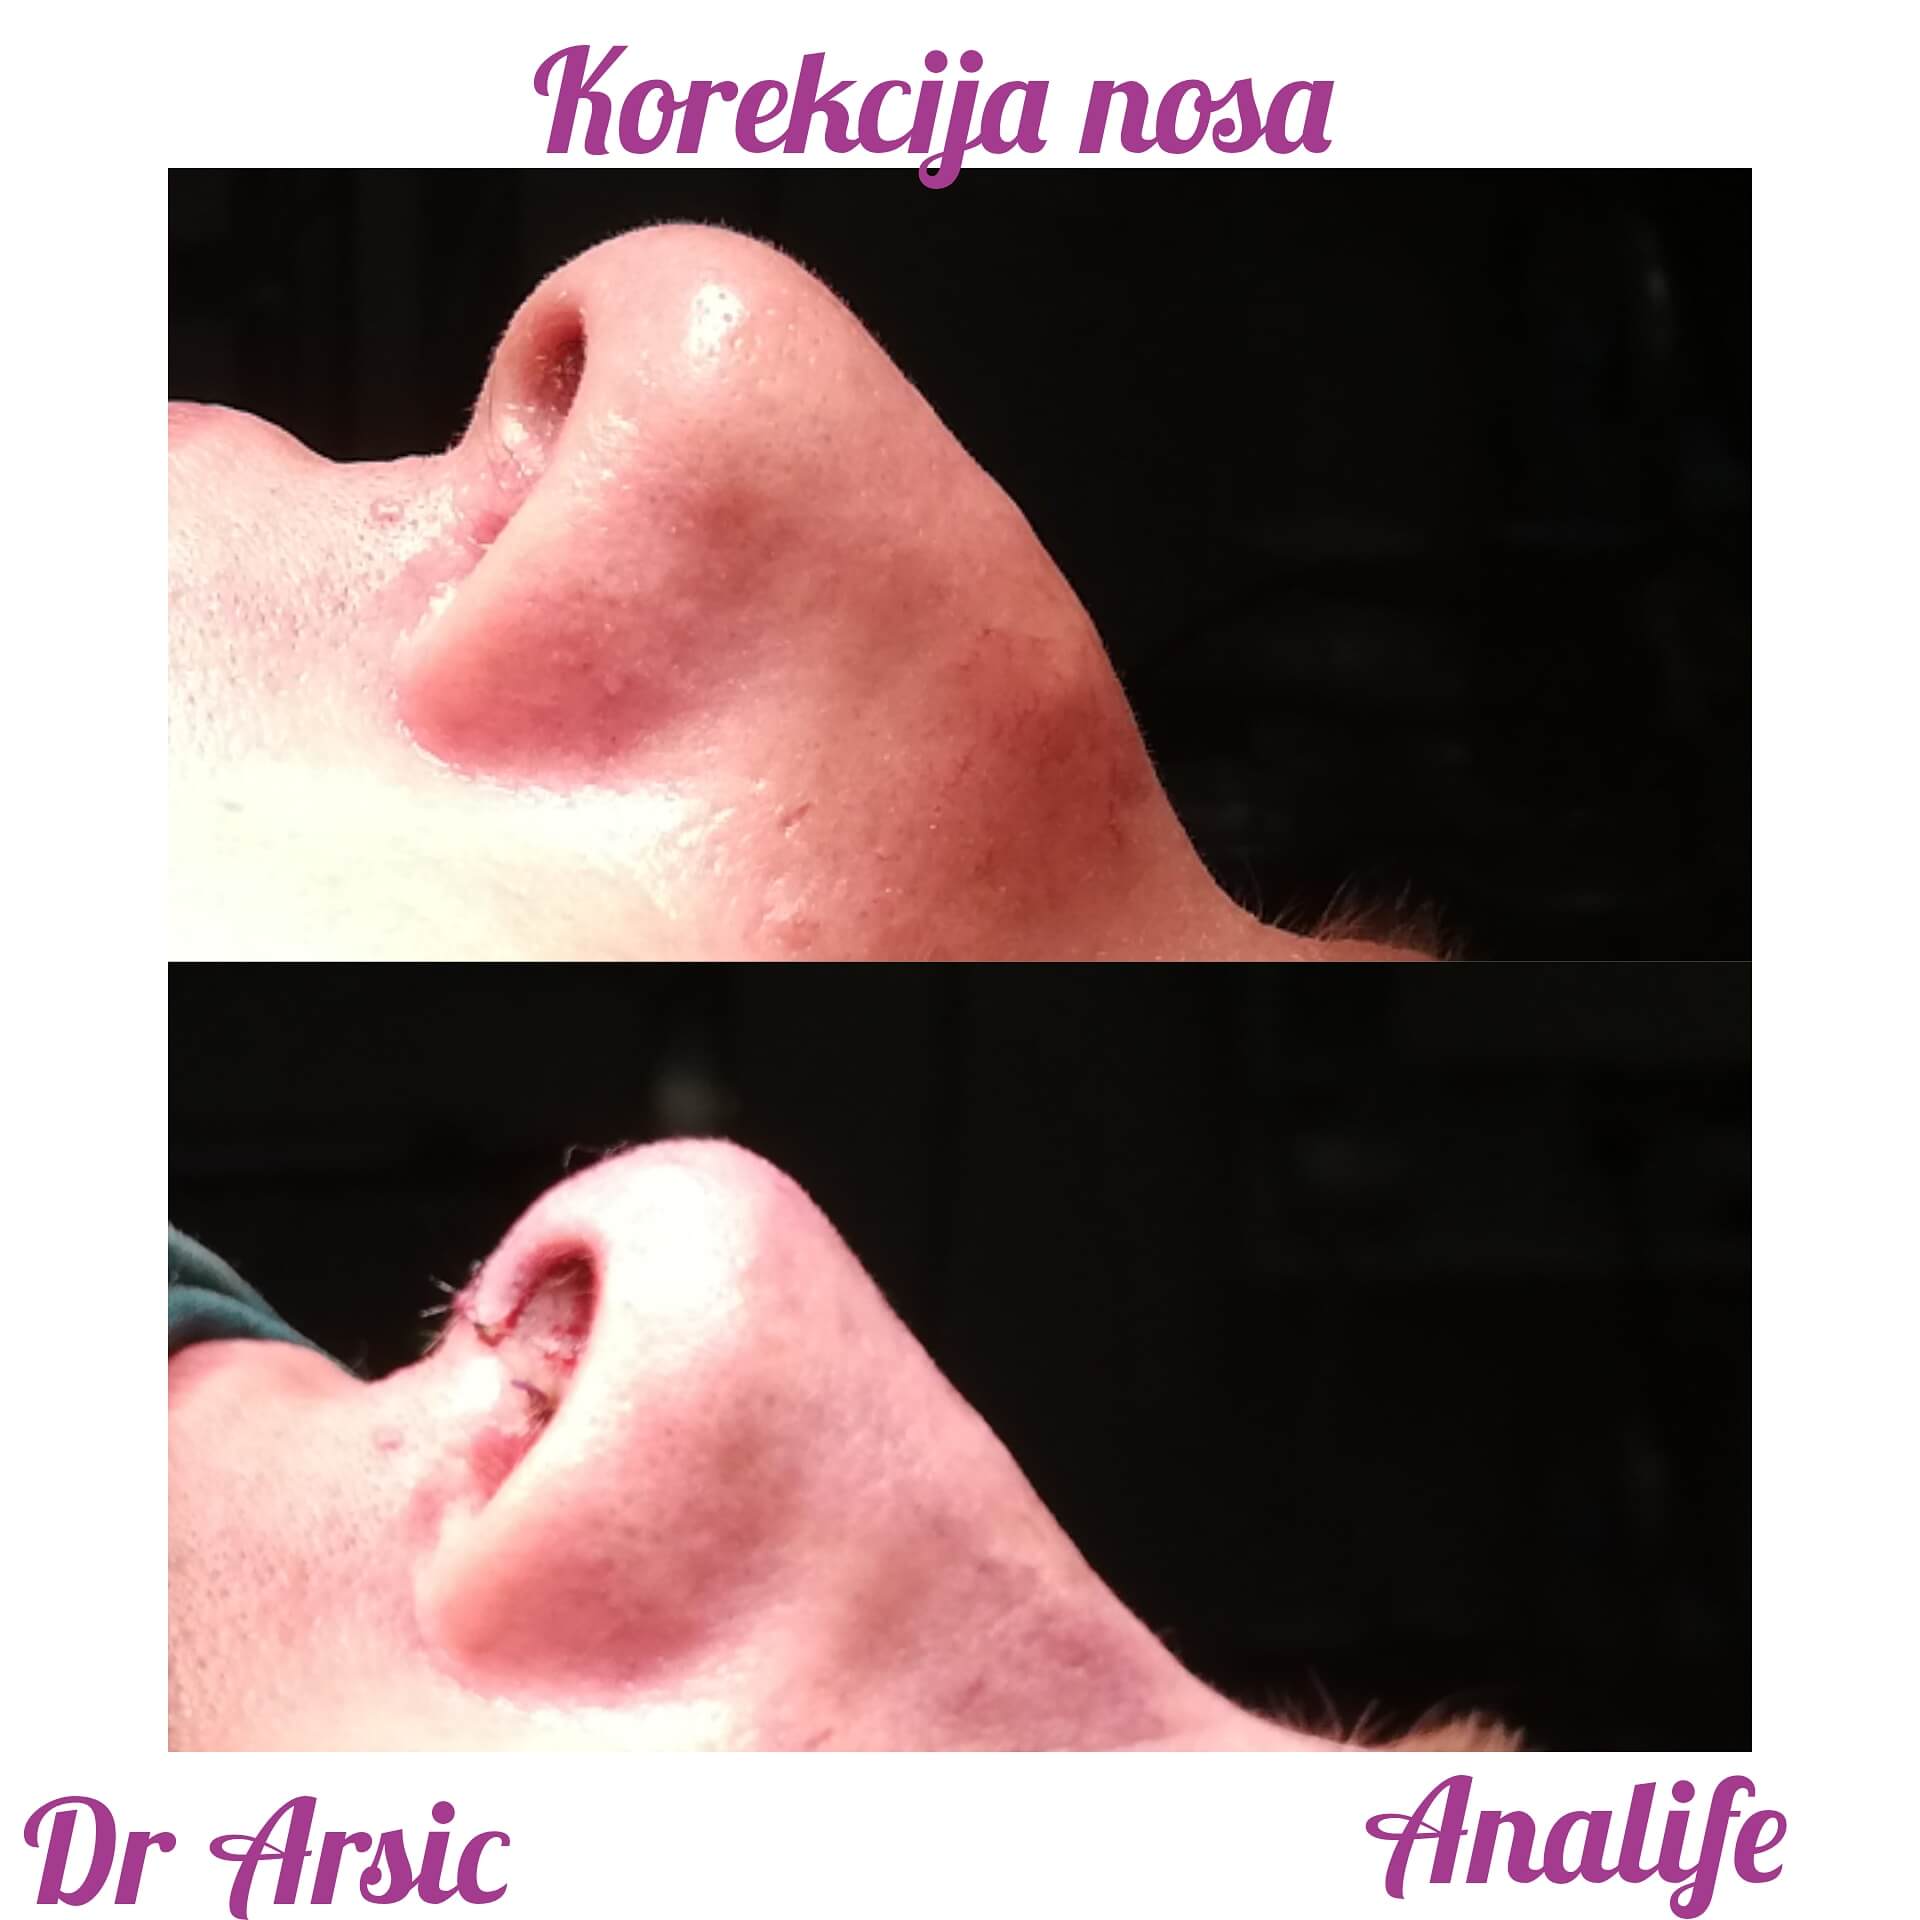 Najsavremenija operacija nosa - Graft tehnikama, po promotivnoj ceni od 1950e